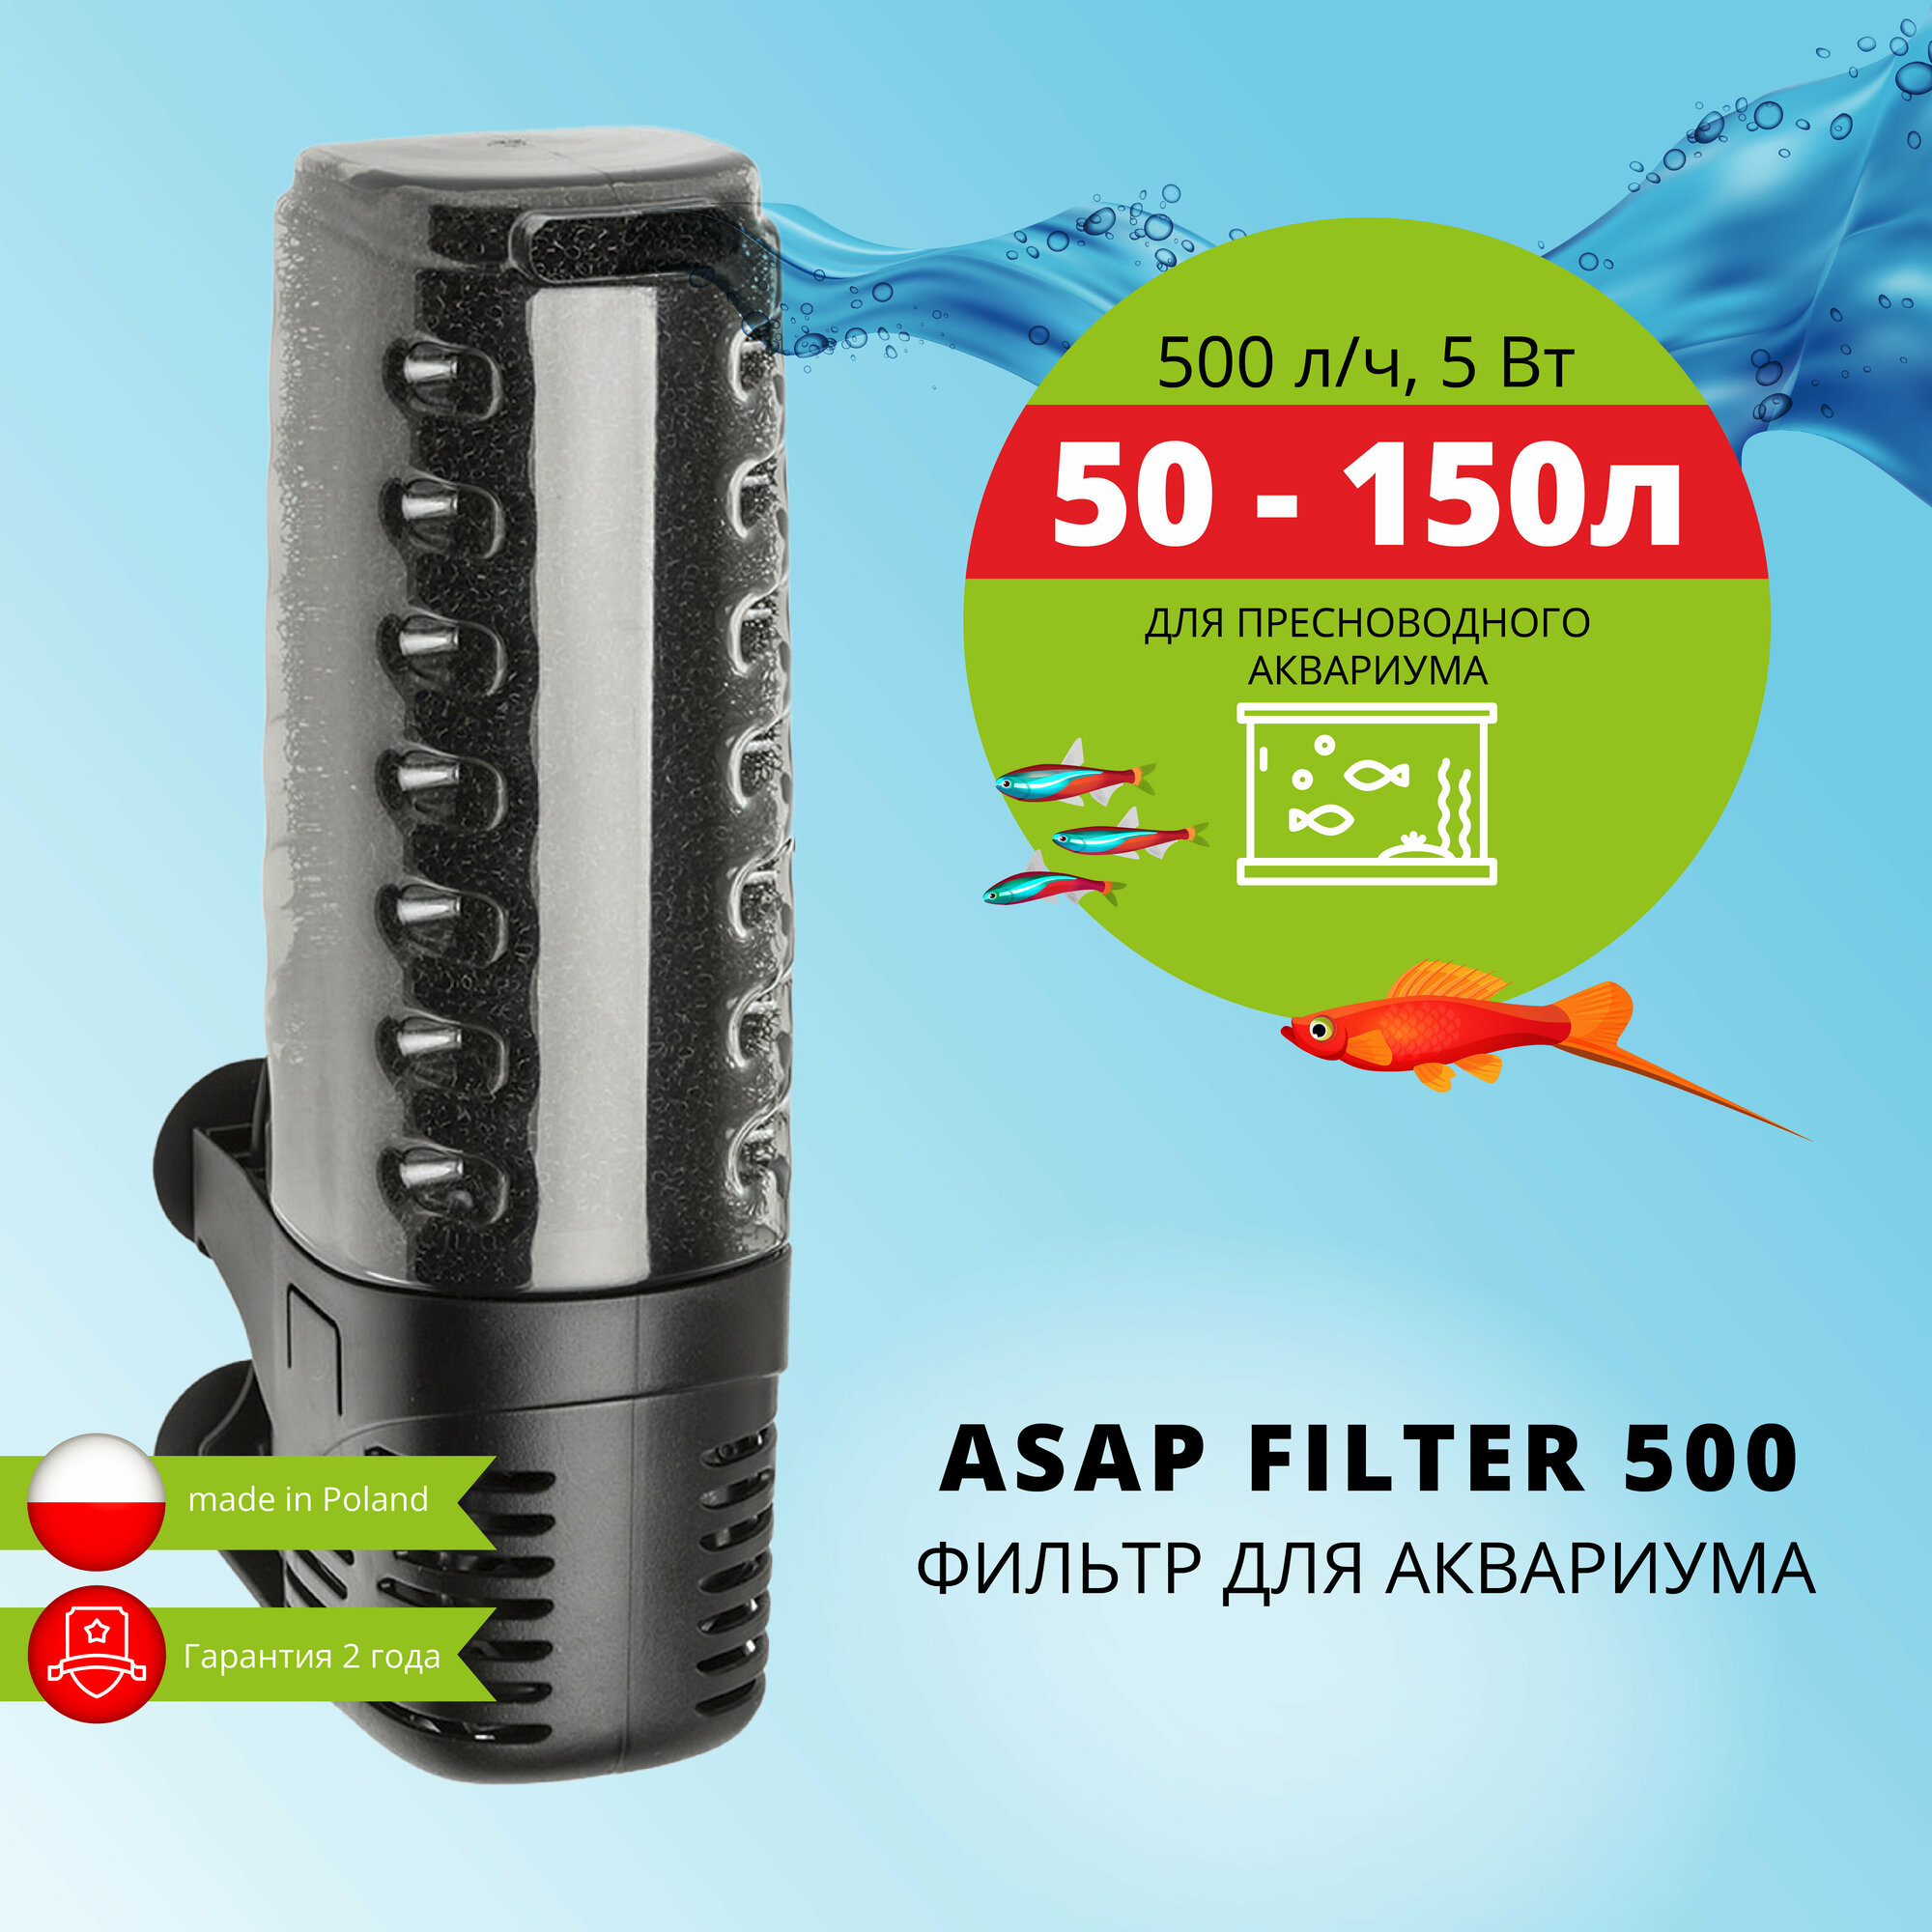 Фильтр внутренний AQUAEL ASAP FILTER 500 для аквариума 50 - 150 л (500 л/ч, 5 Вт)